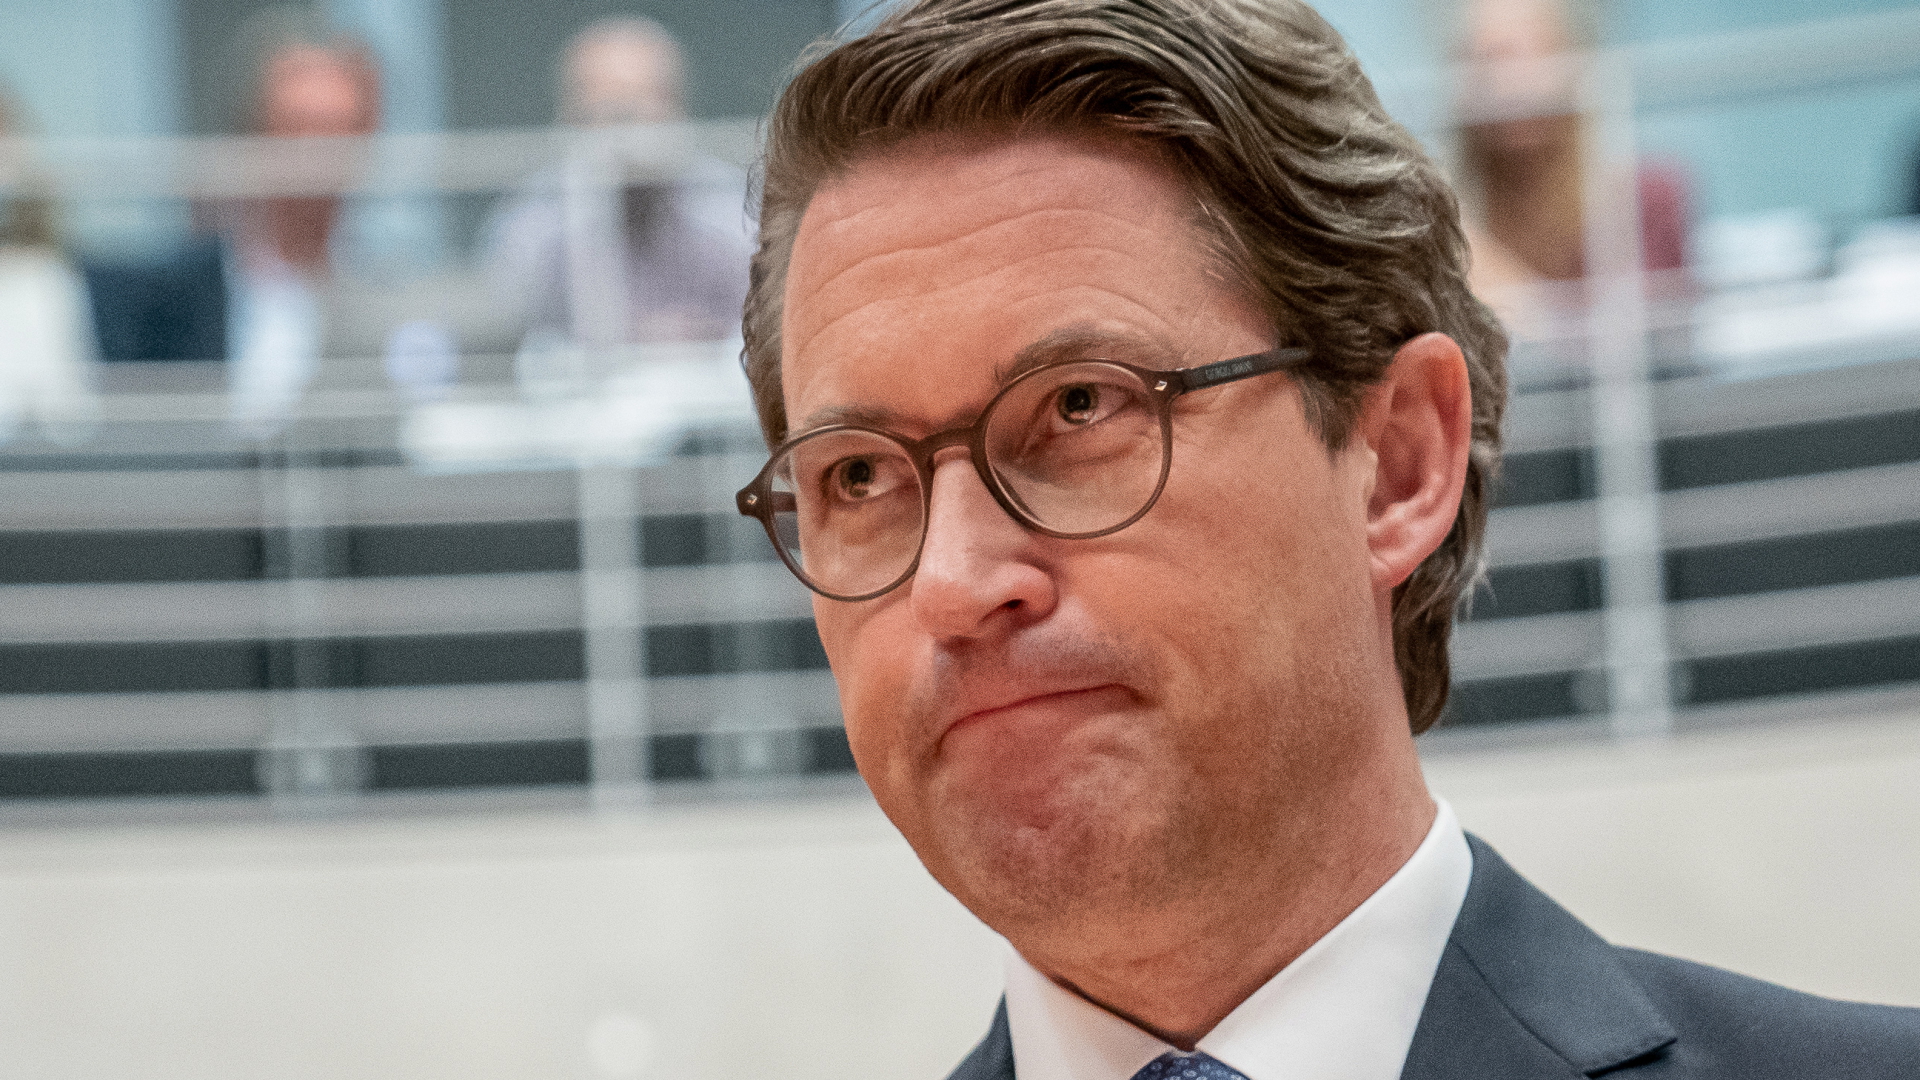 Verkehrsminister Scheuer als Zeige vor dem Untersuchungsausschuss zur Pkw-Maut im Oktober 2020